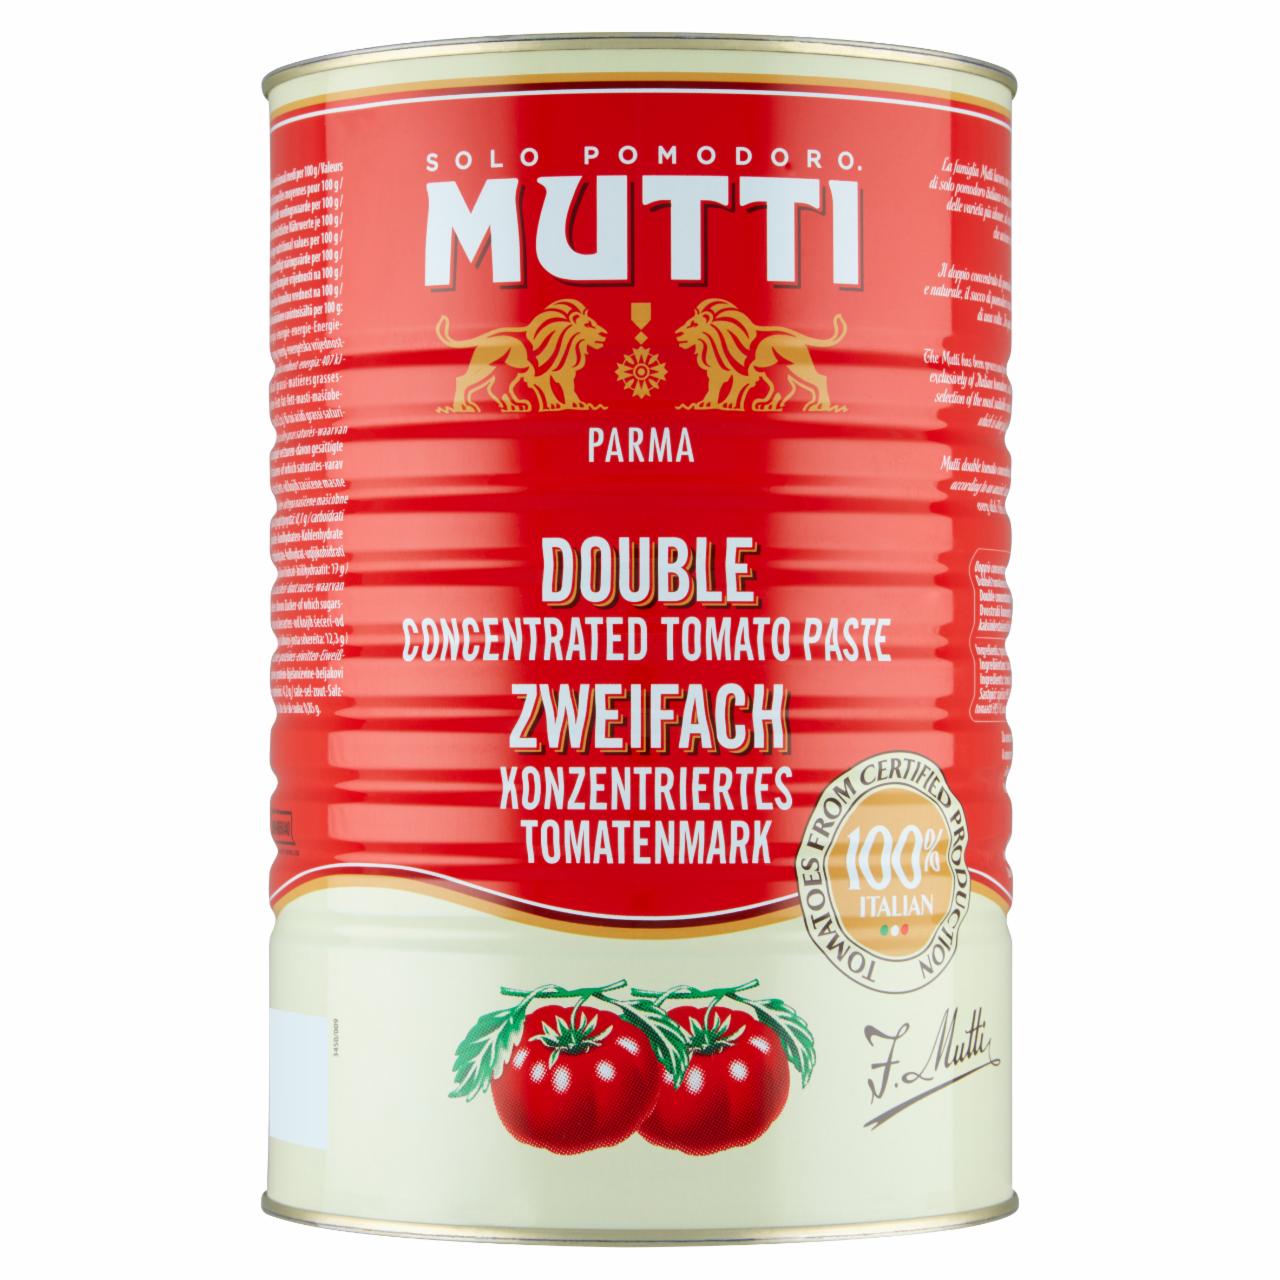 Zdjęcia - Mutti Koncentrat pomidorowy 4500 g